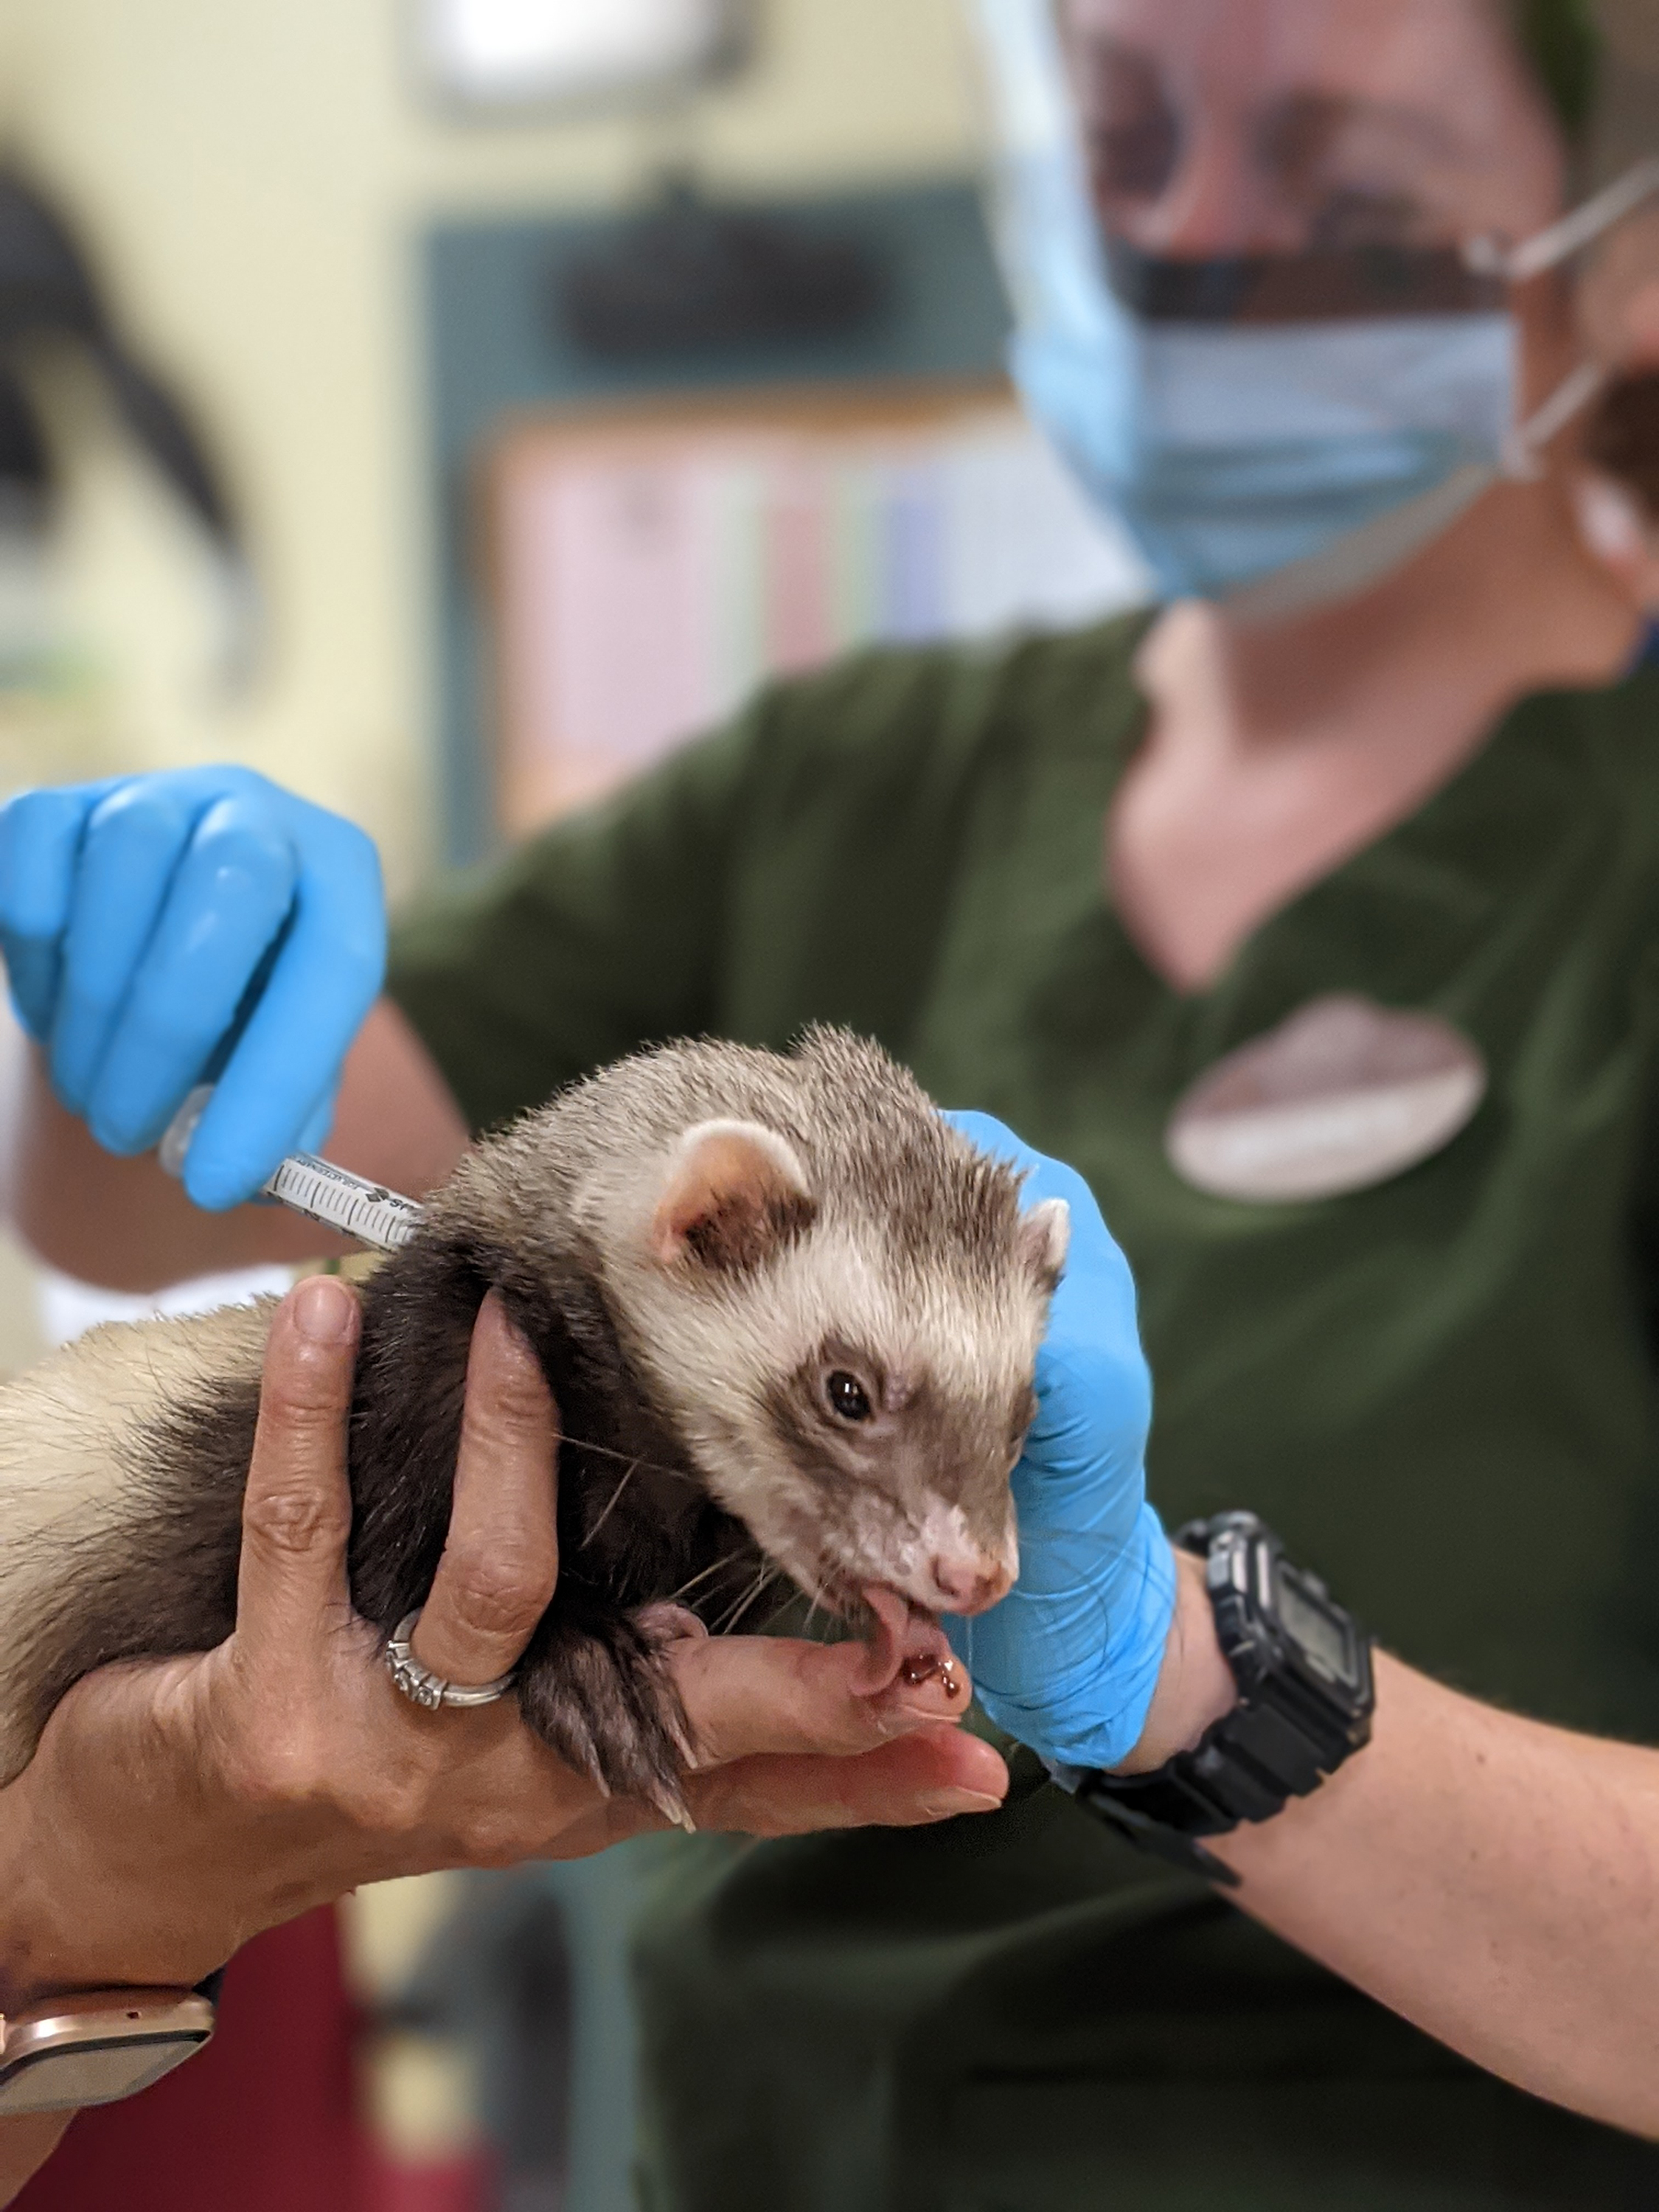 Una fotografía facilitada por Zoetis y el Zoológico de Oakland muestra a un miembro del personal del zoológico administrando a un hurón la vacuna experimental contra el COVID-19. (Foto Prensa Libre: Zoetis/Oakland Zoo vía The New York Times)